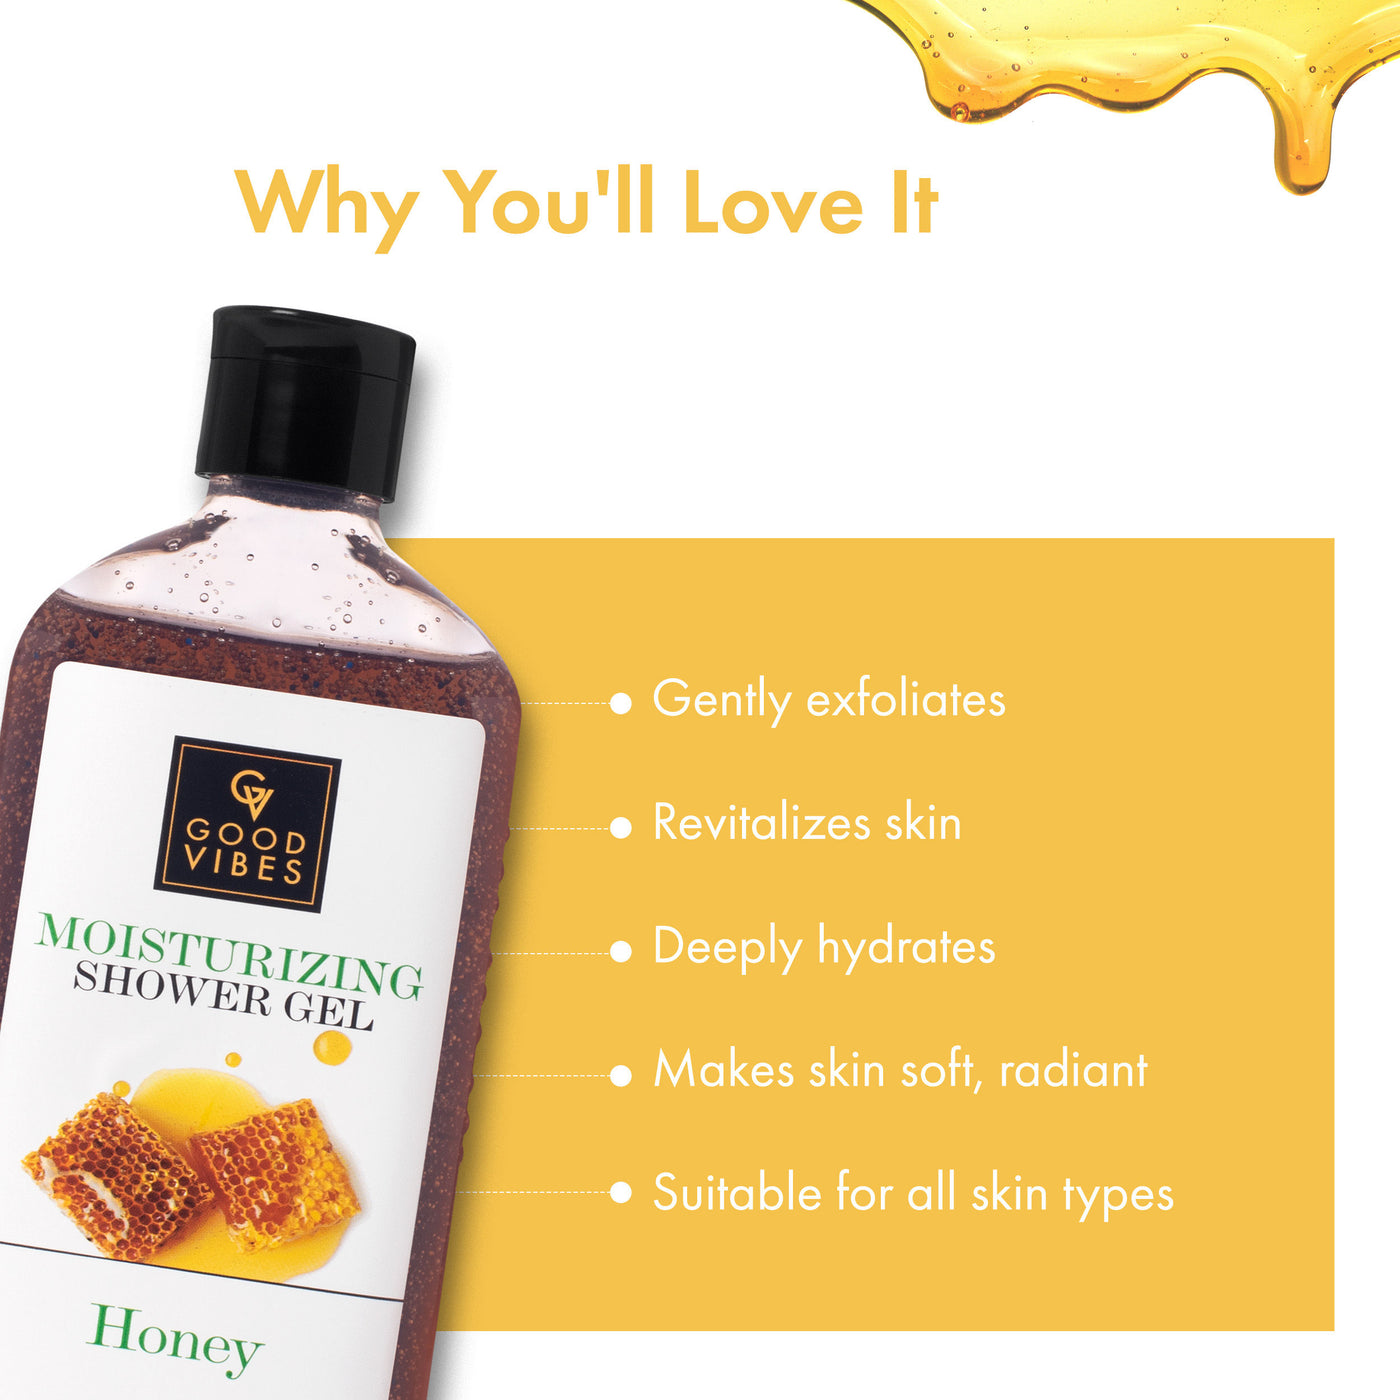 good-vibes-moisturizing-shower-gel-honey-300-ml-3